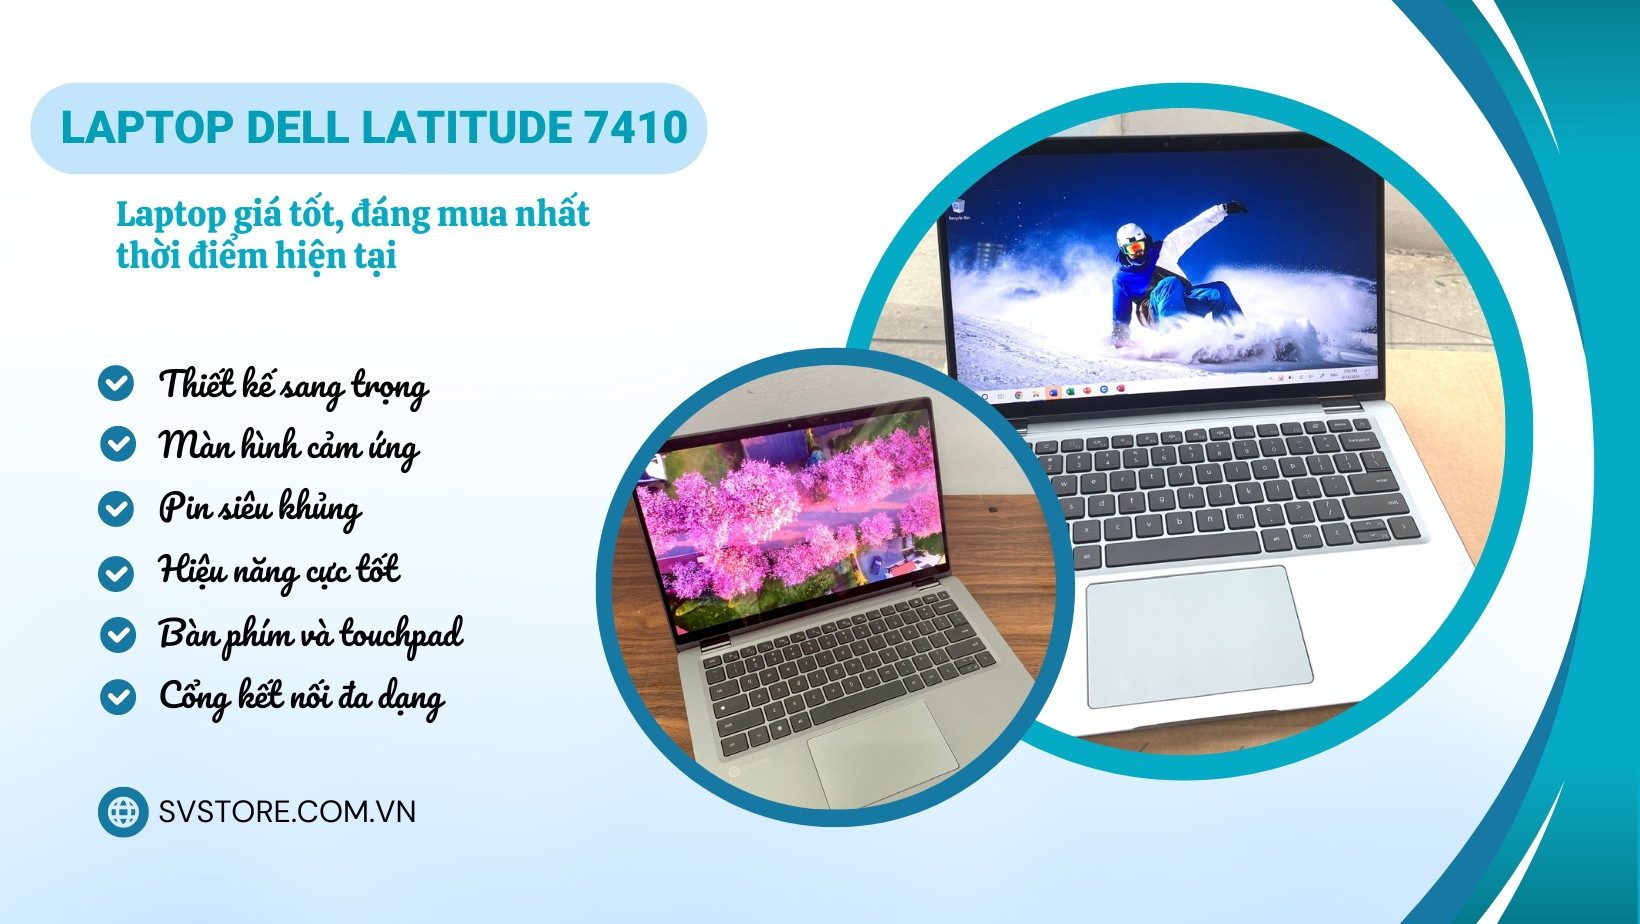 Laptop Dell Latitude 7410 - Laptop giá tốt, đáng mua nhất thời điểm hiện tại